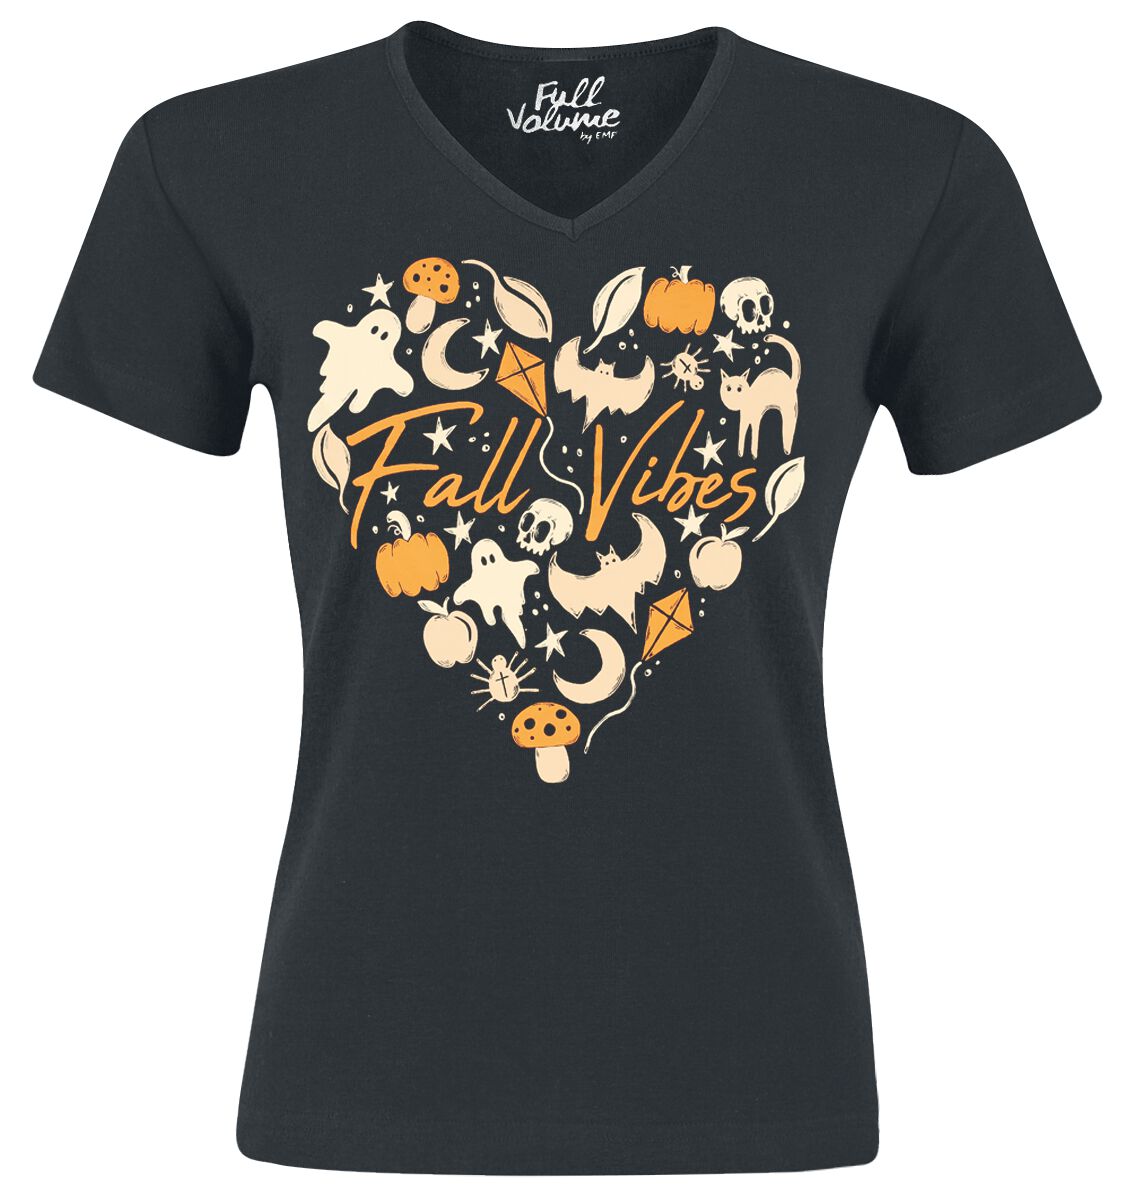 Full Volume by EMP T-Shirt - Halloween T-Shirt mit Fall Vibes Herzmotiv - S bis 4XL - für Damen - Größe 4XL - schwarz